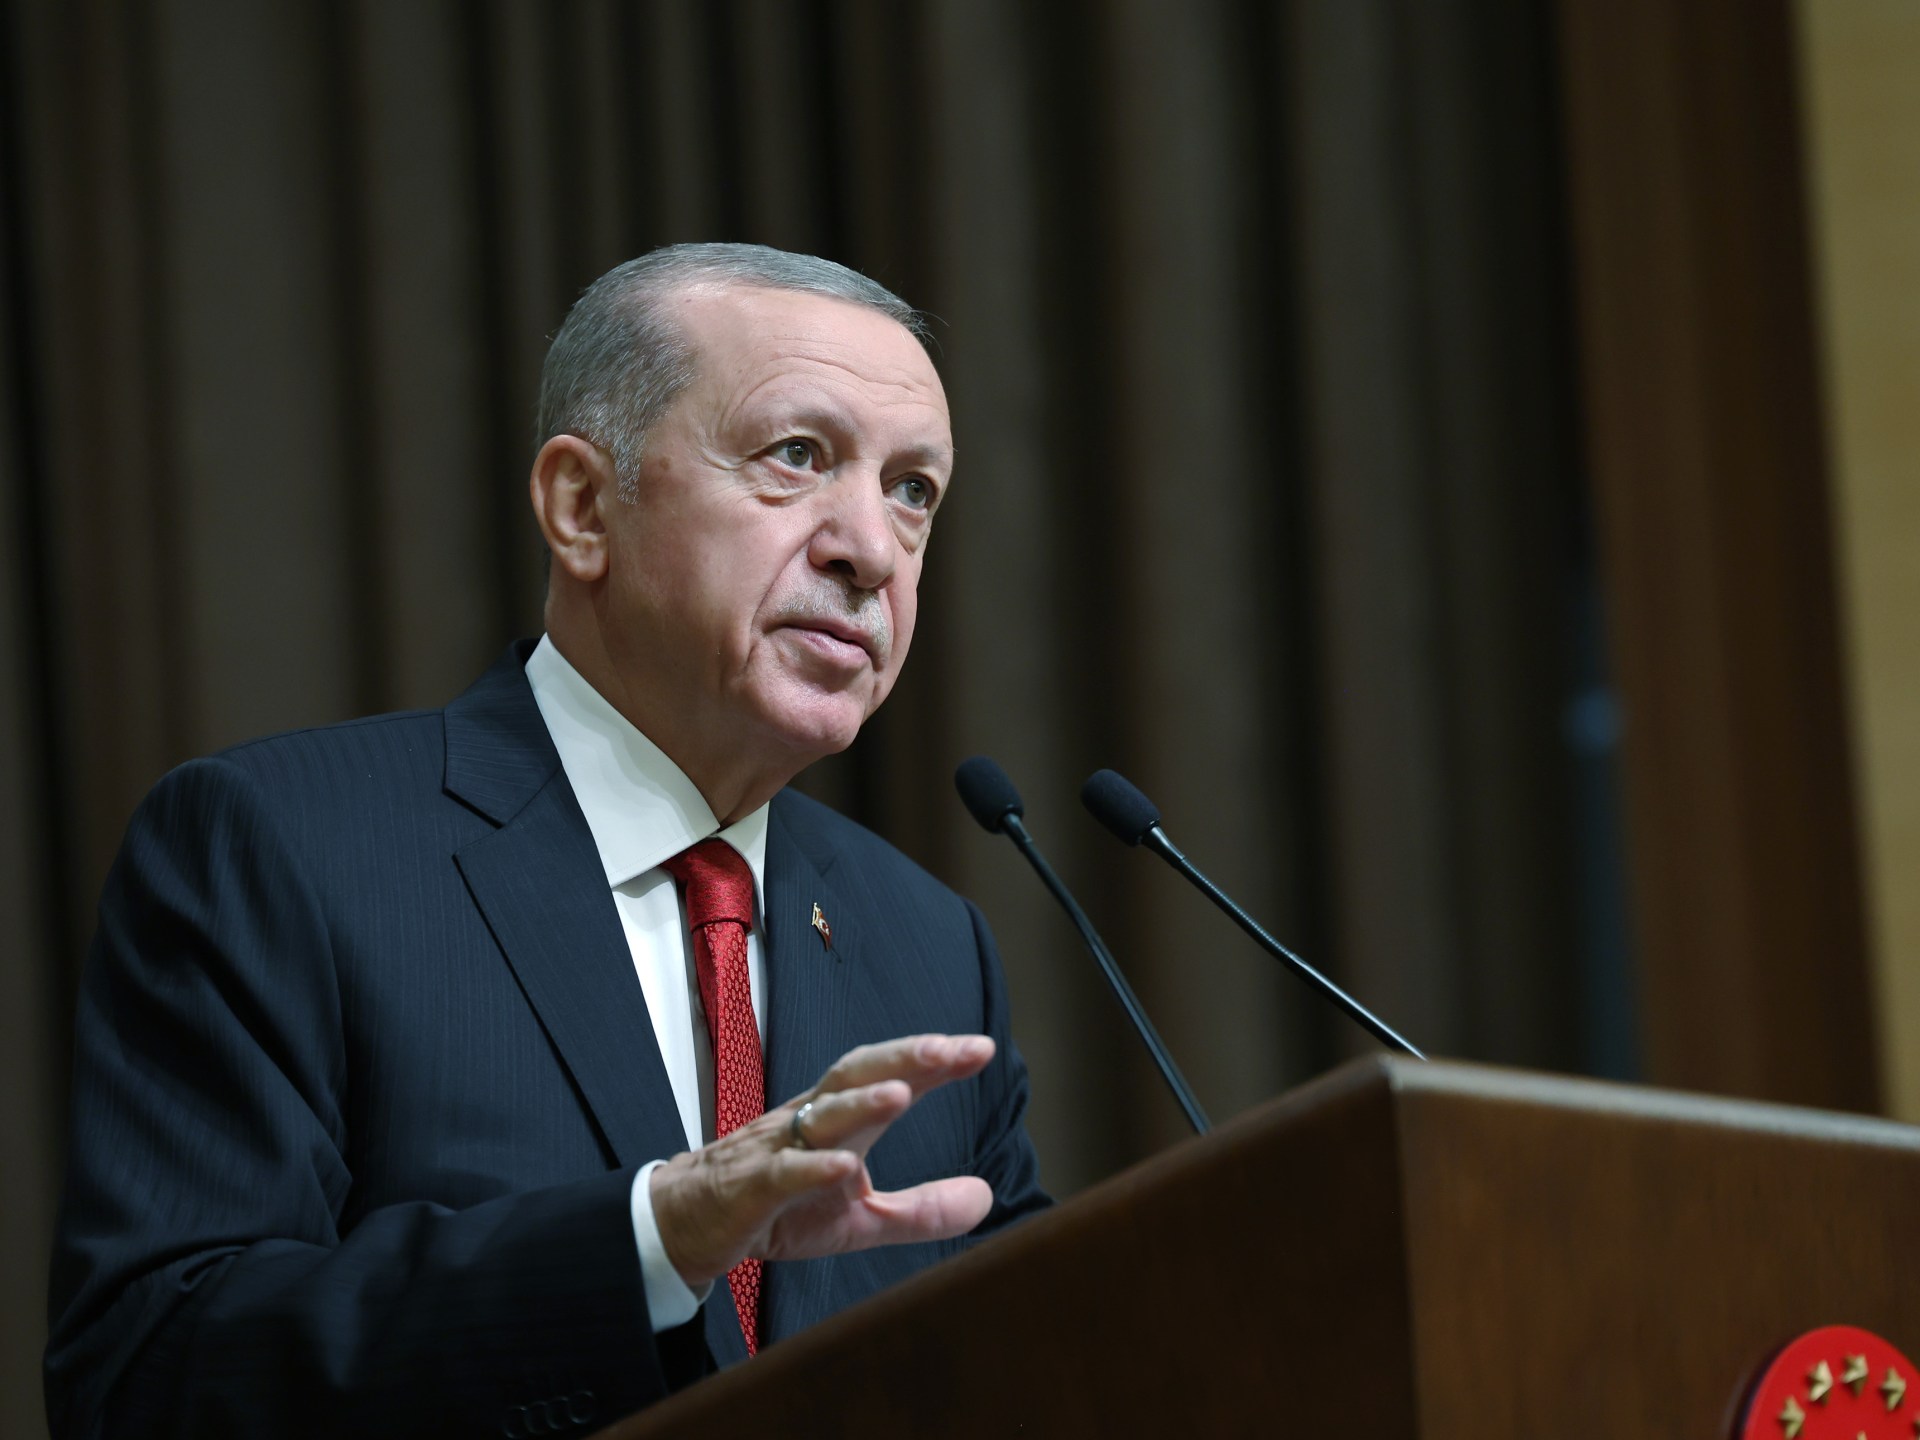 صحيفة: تركيا تزيد الضغوط على إسرائيل بقرار تجاري جديد | اقتصاد – البوكس نيوز